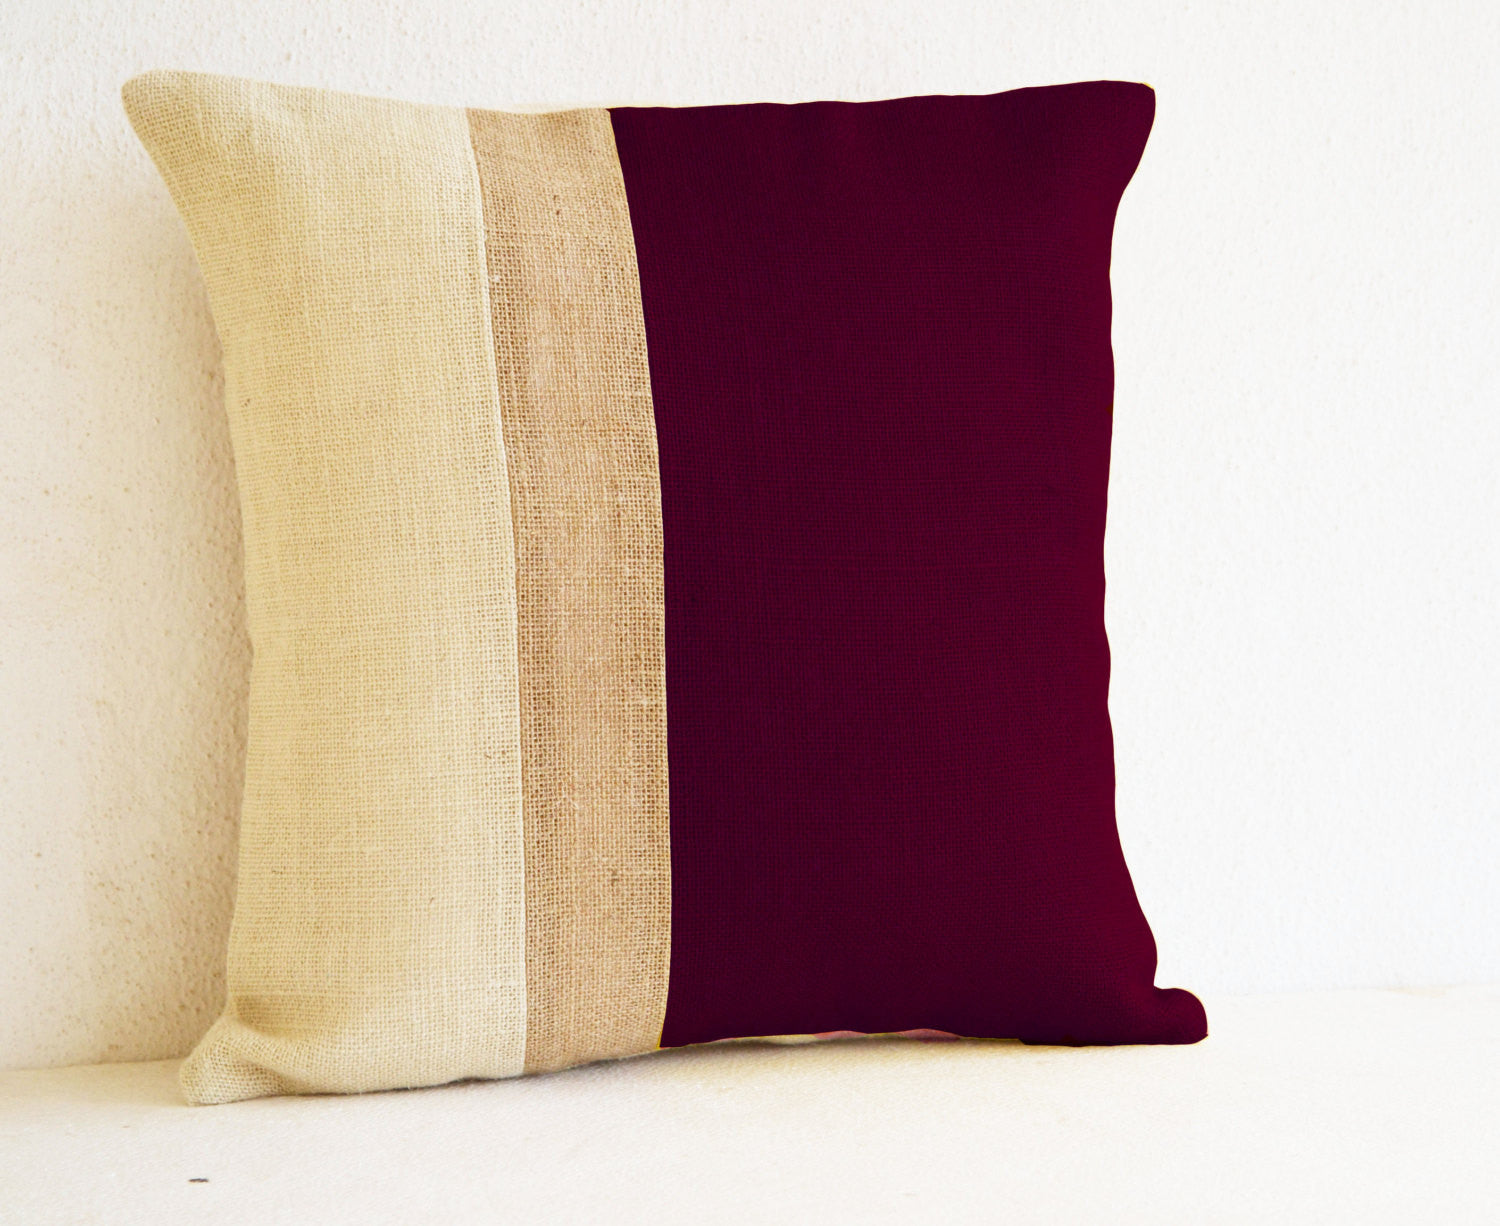 Handmade burgundy pillow covers in burlap